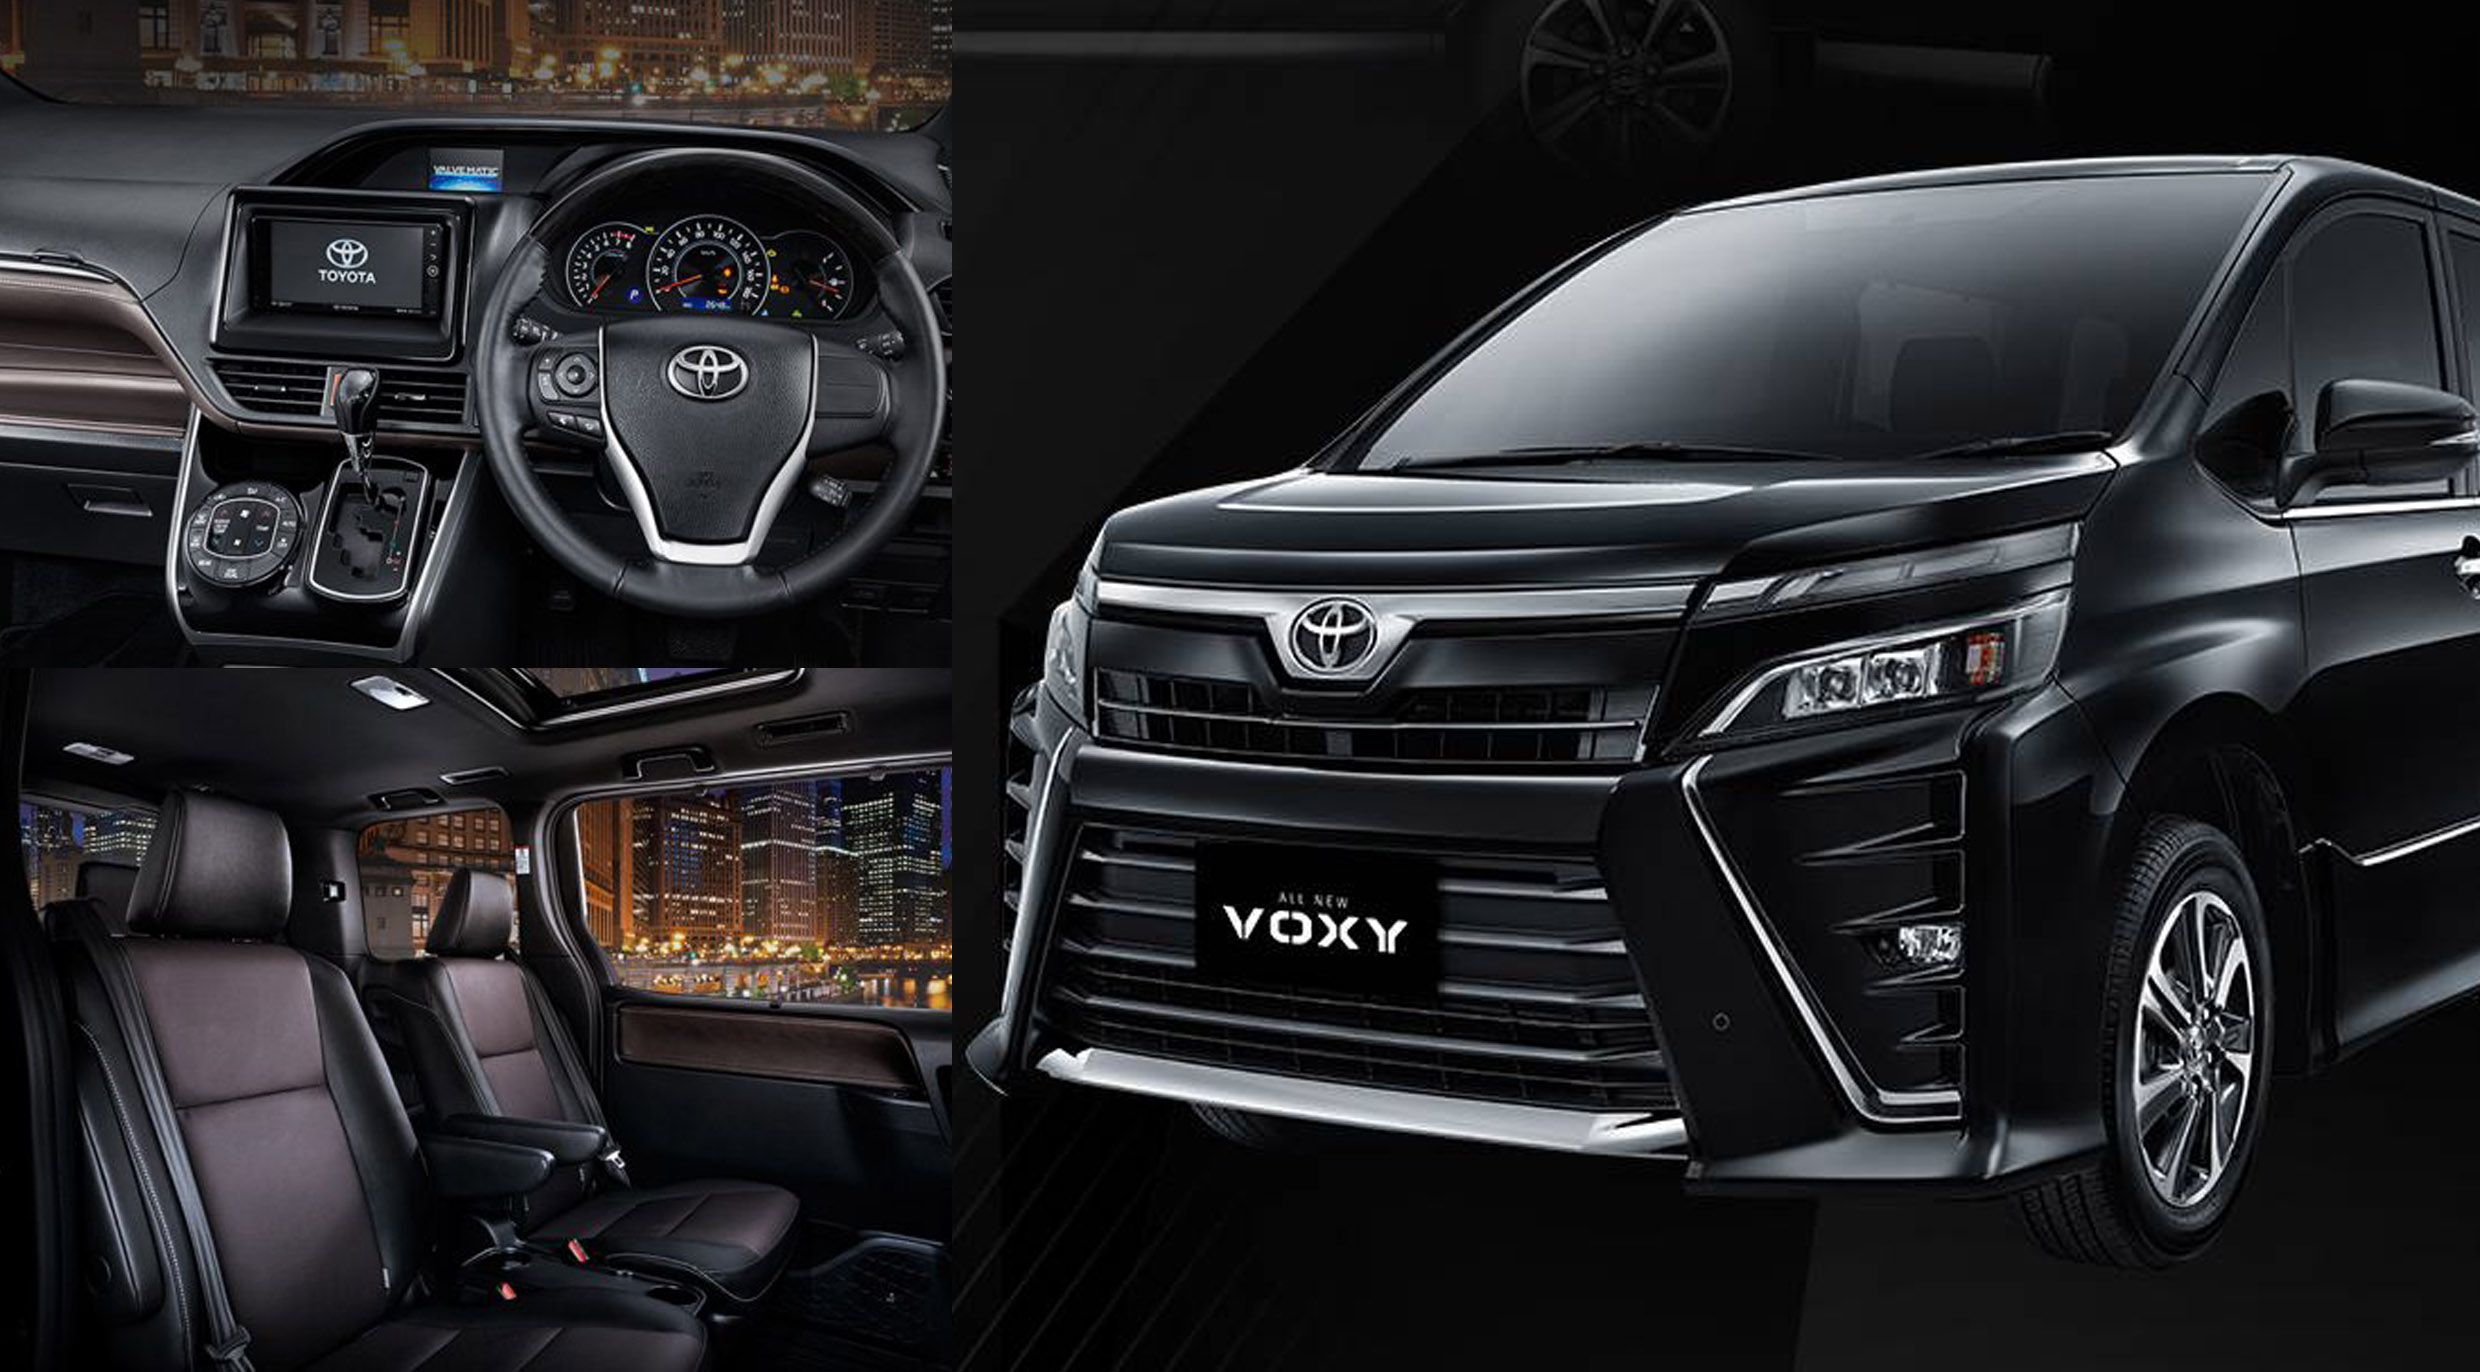 Toyota Voxy ราคา 1.01 ล้านบาท MPV สุดหรูคุ้มค่า ในอินโดฯ